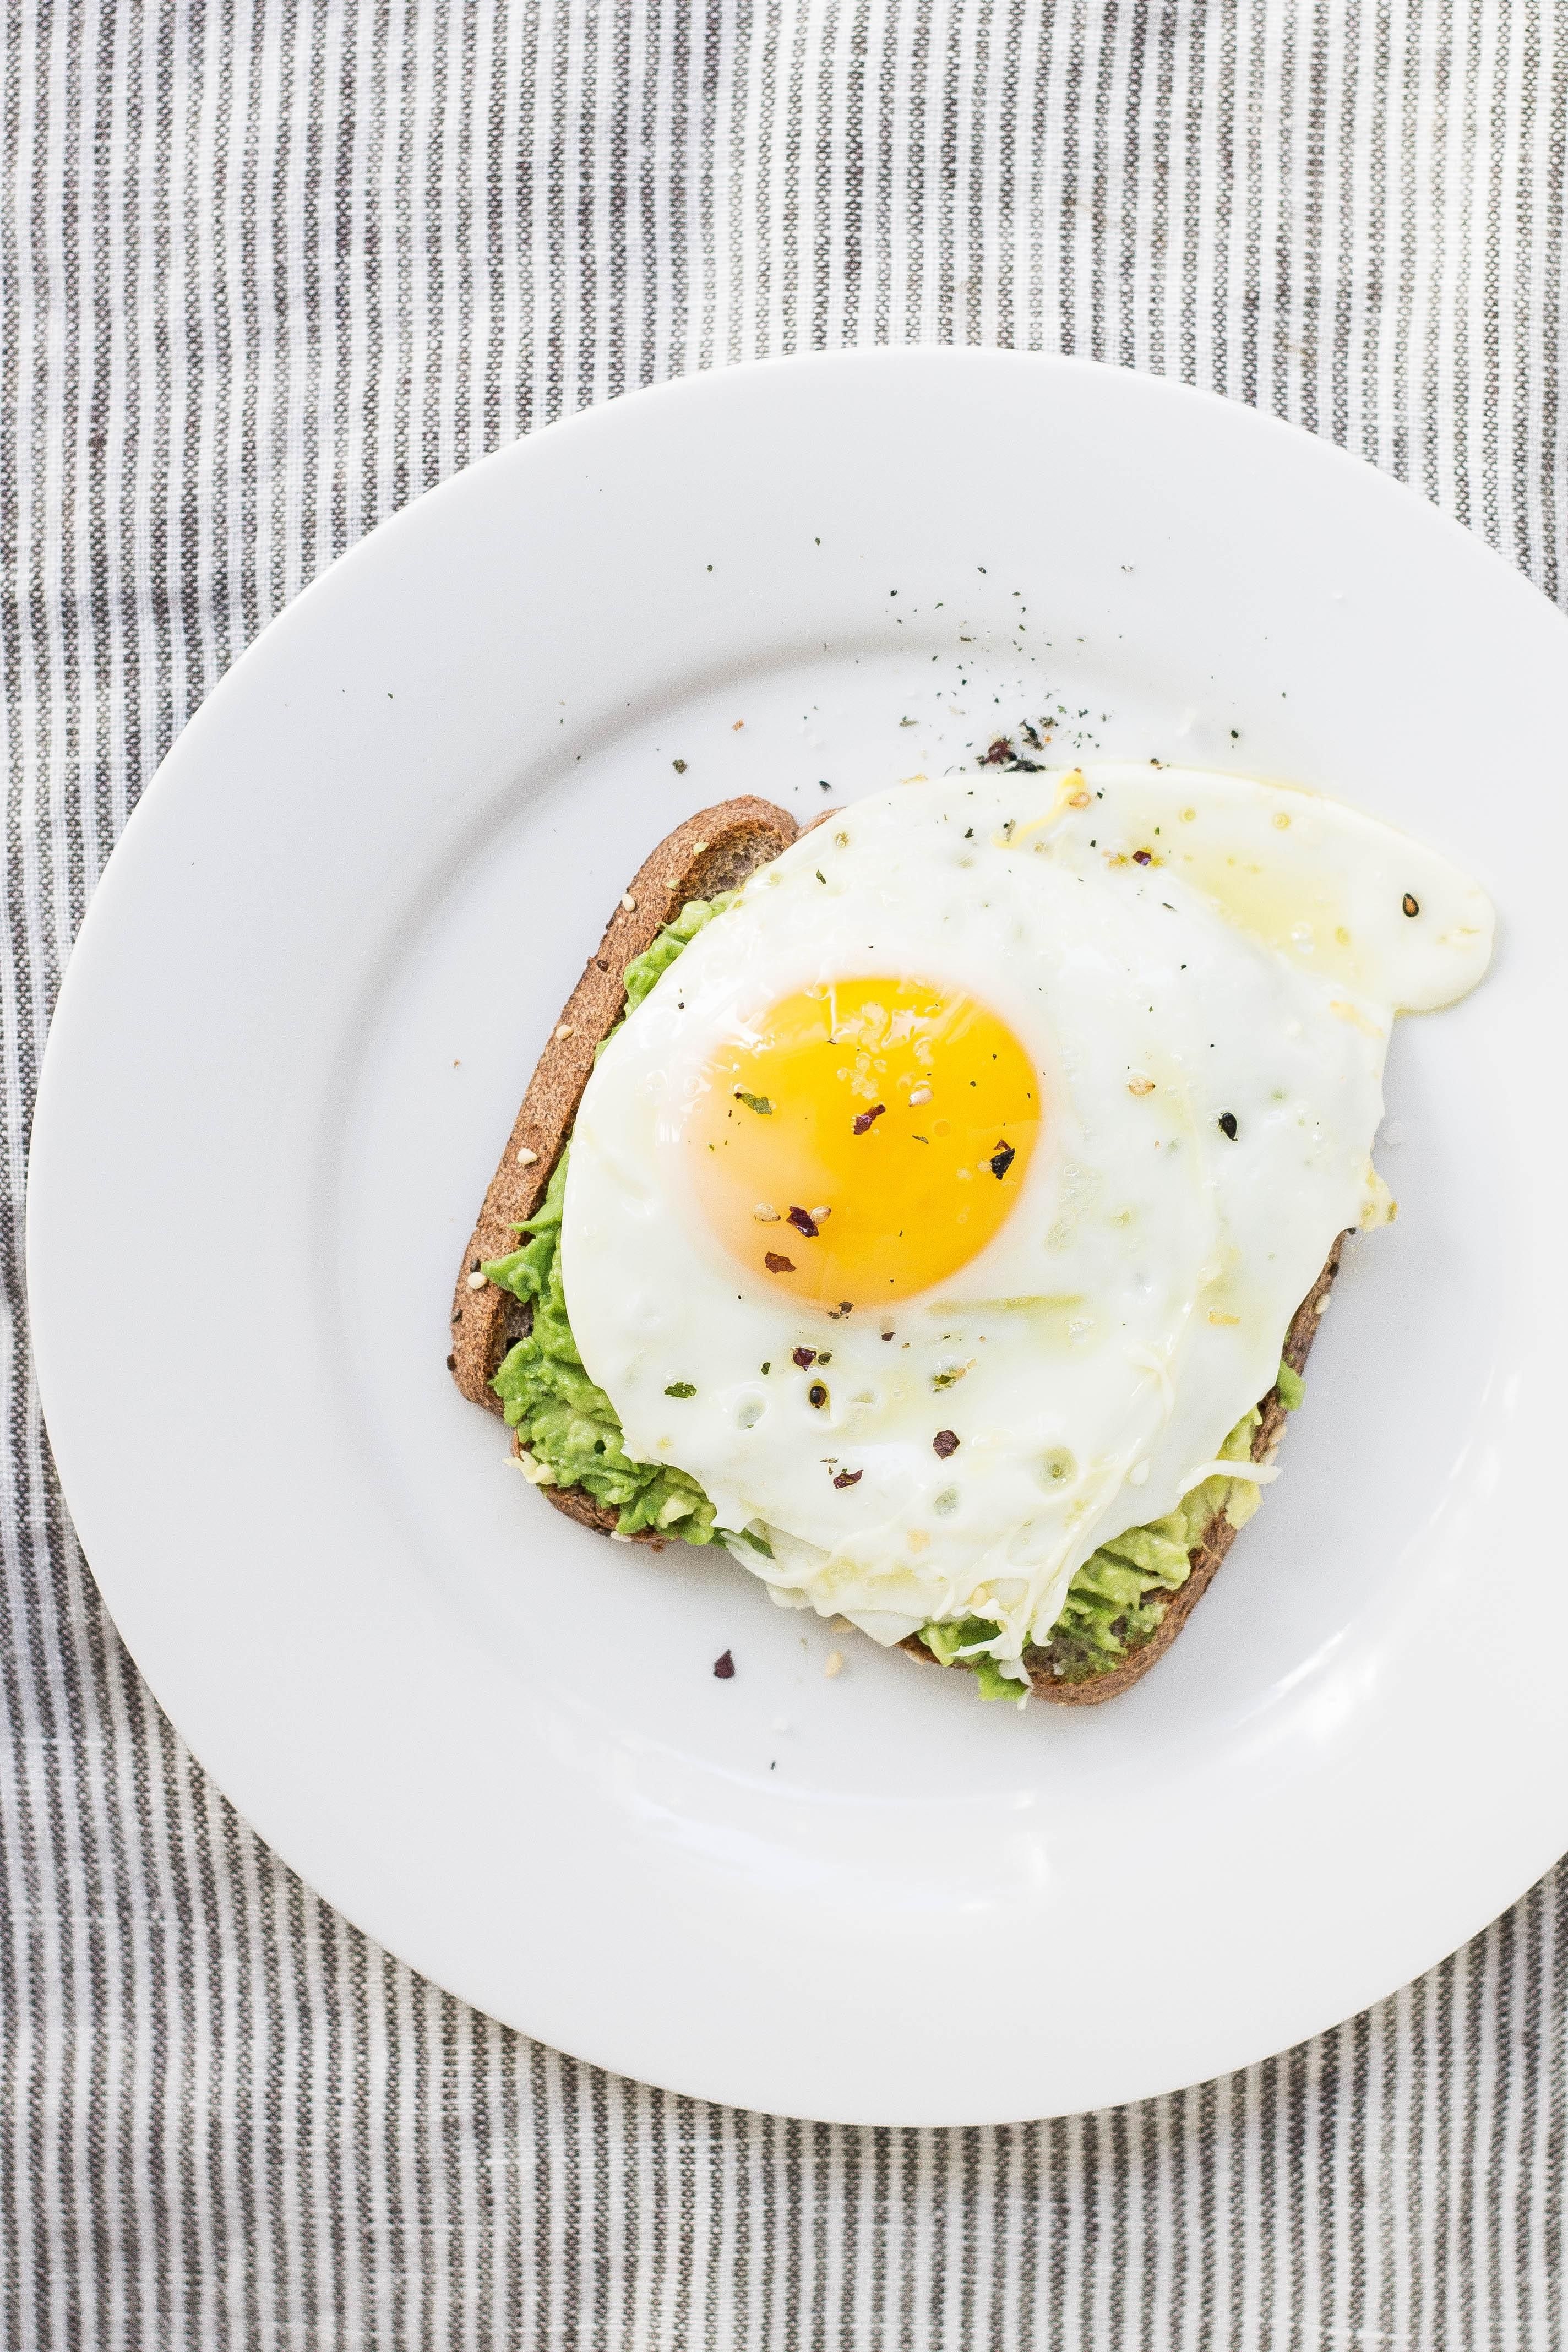 Разнообразим будни: два рецепта яиц из разных уголков мира - Новости Вкусно